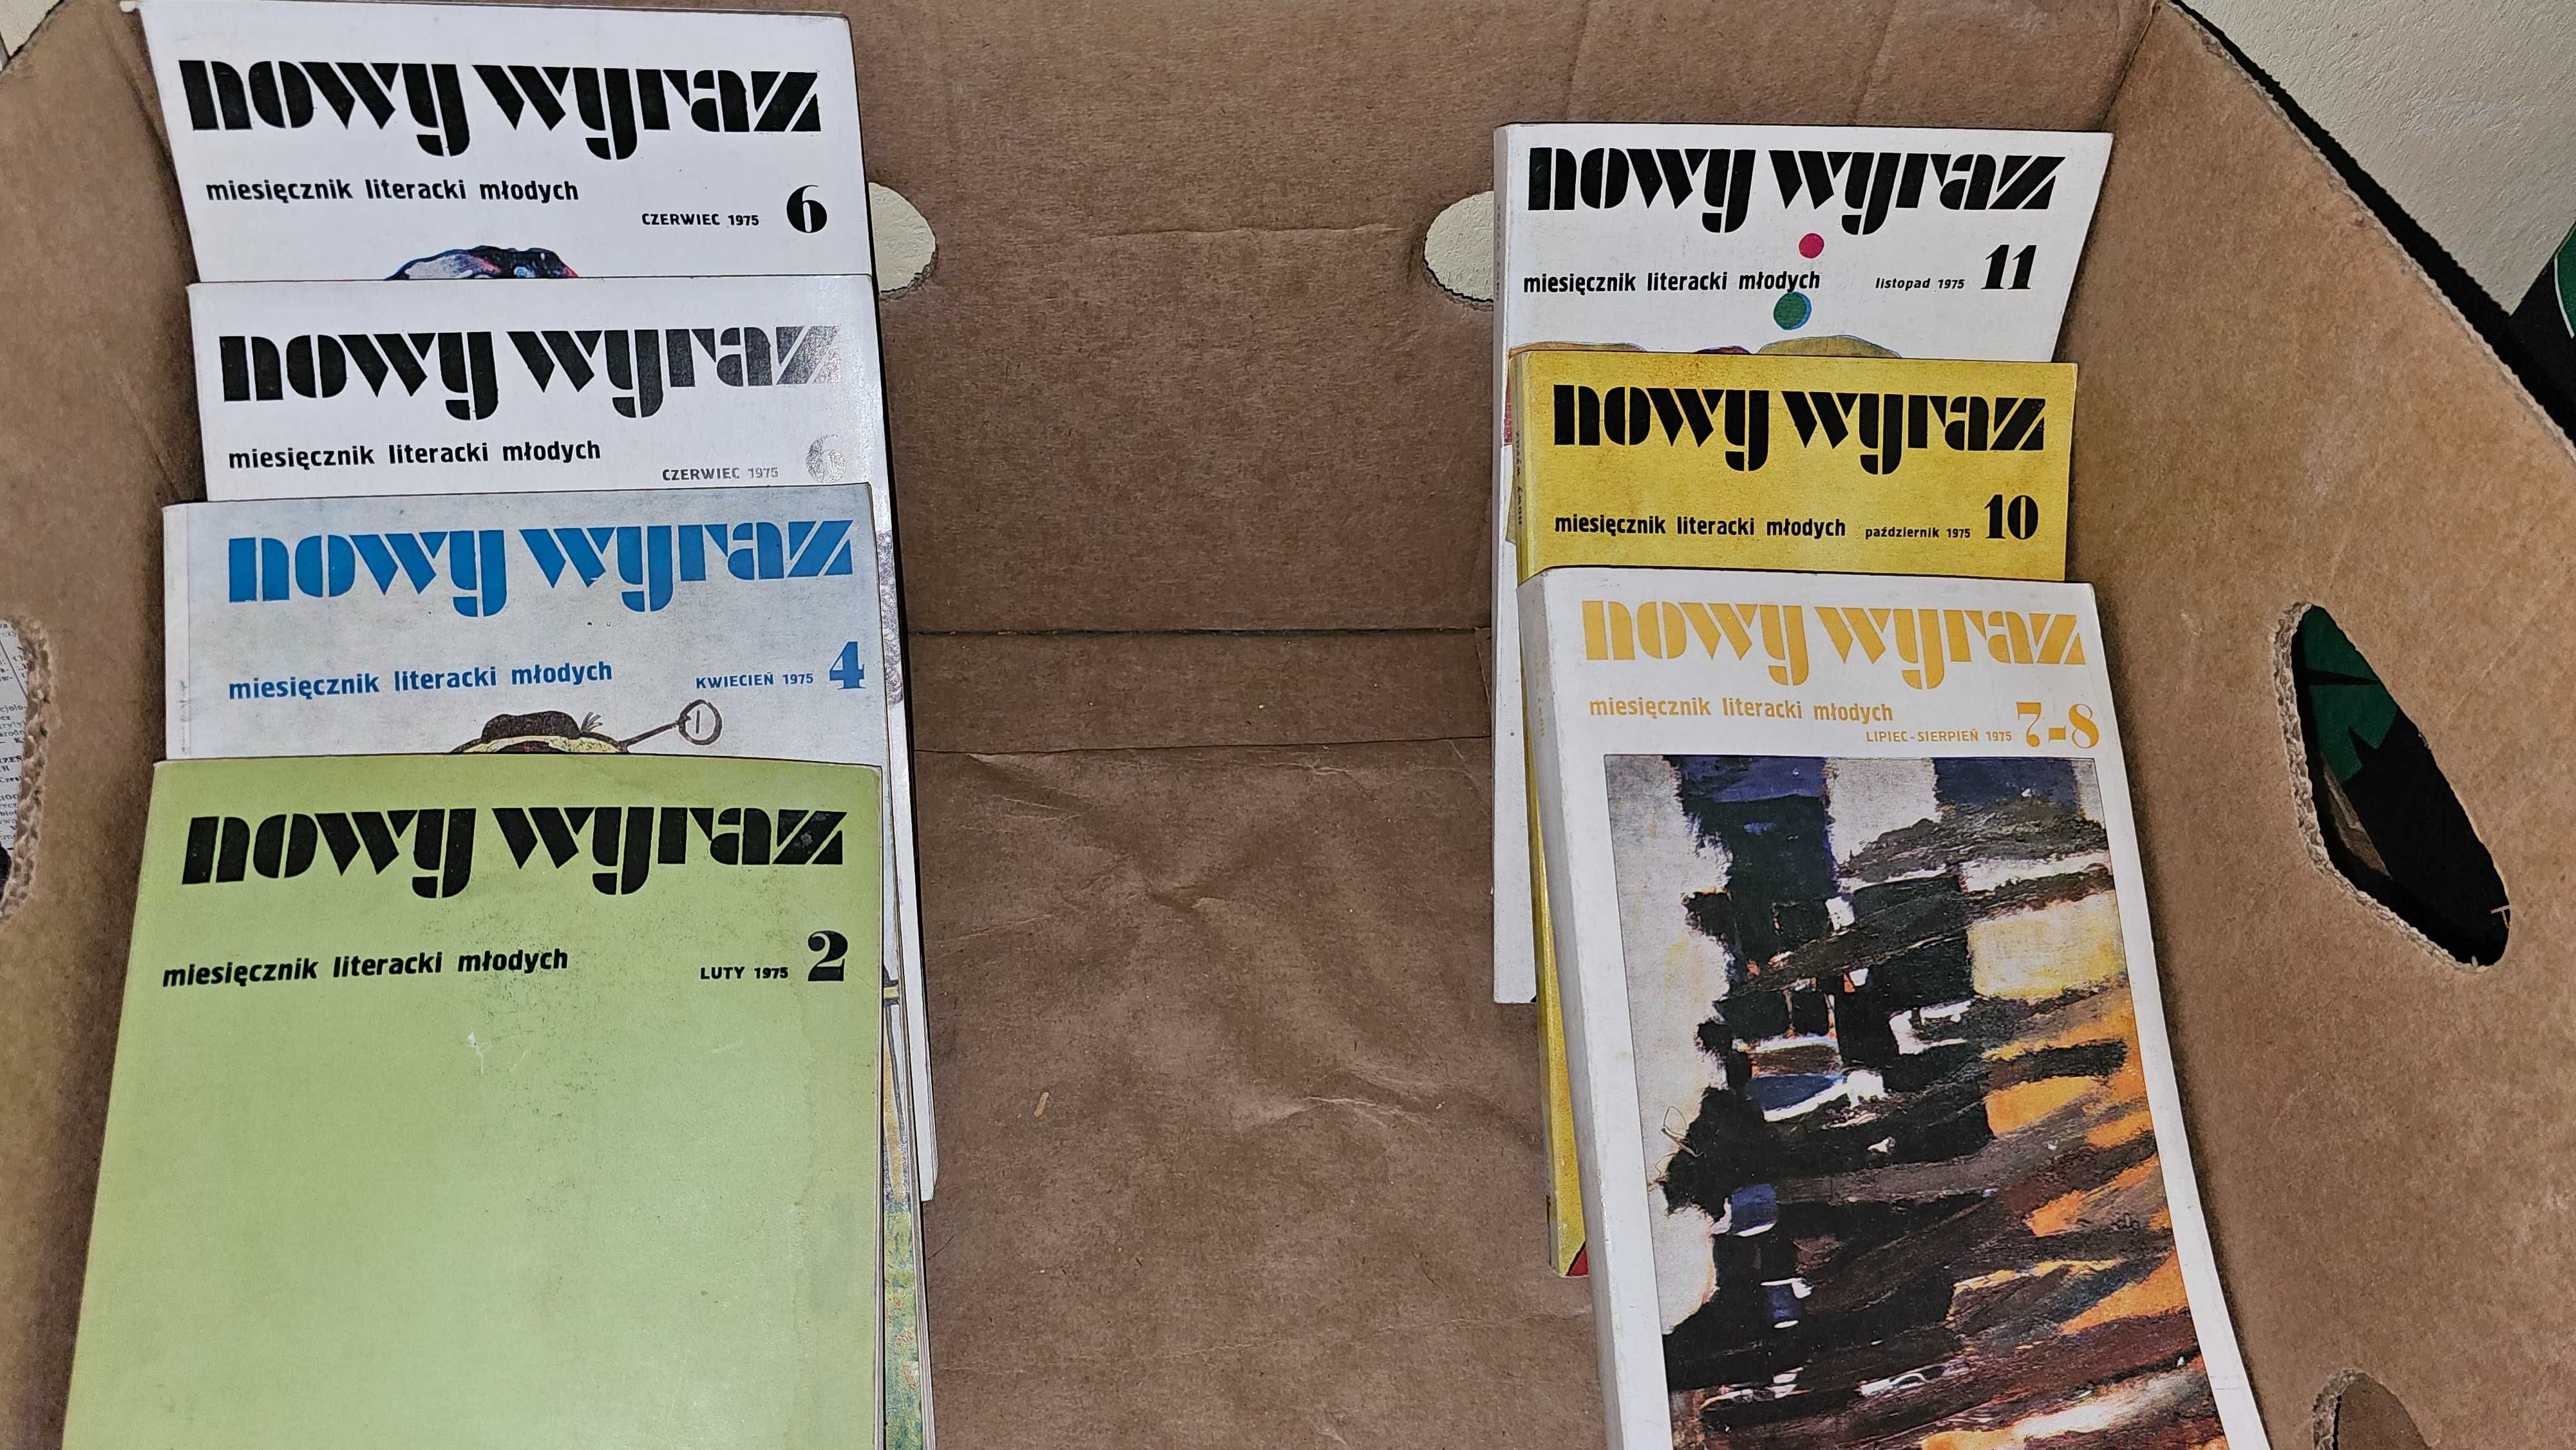 AF Zestaw 20x NOWY WYRAZ  miesięcznik literacki młodych  1972 - 1977